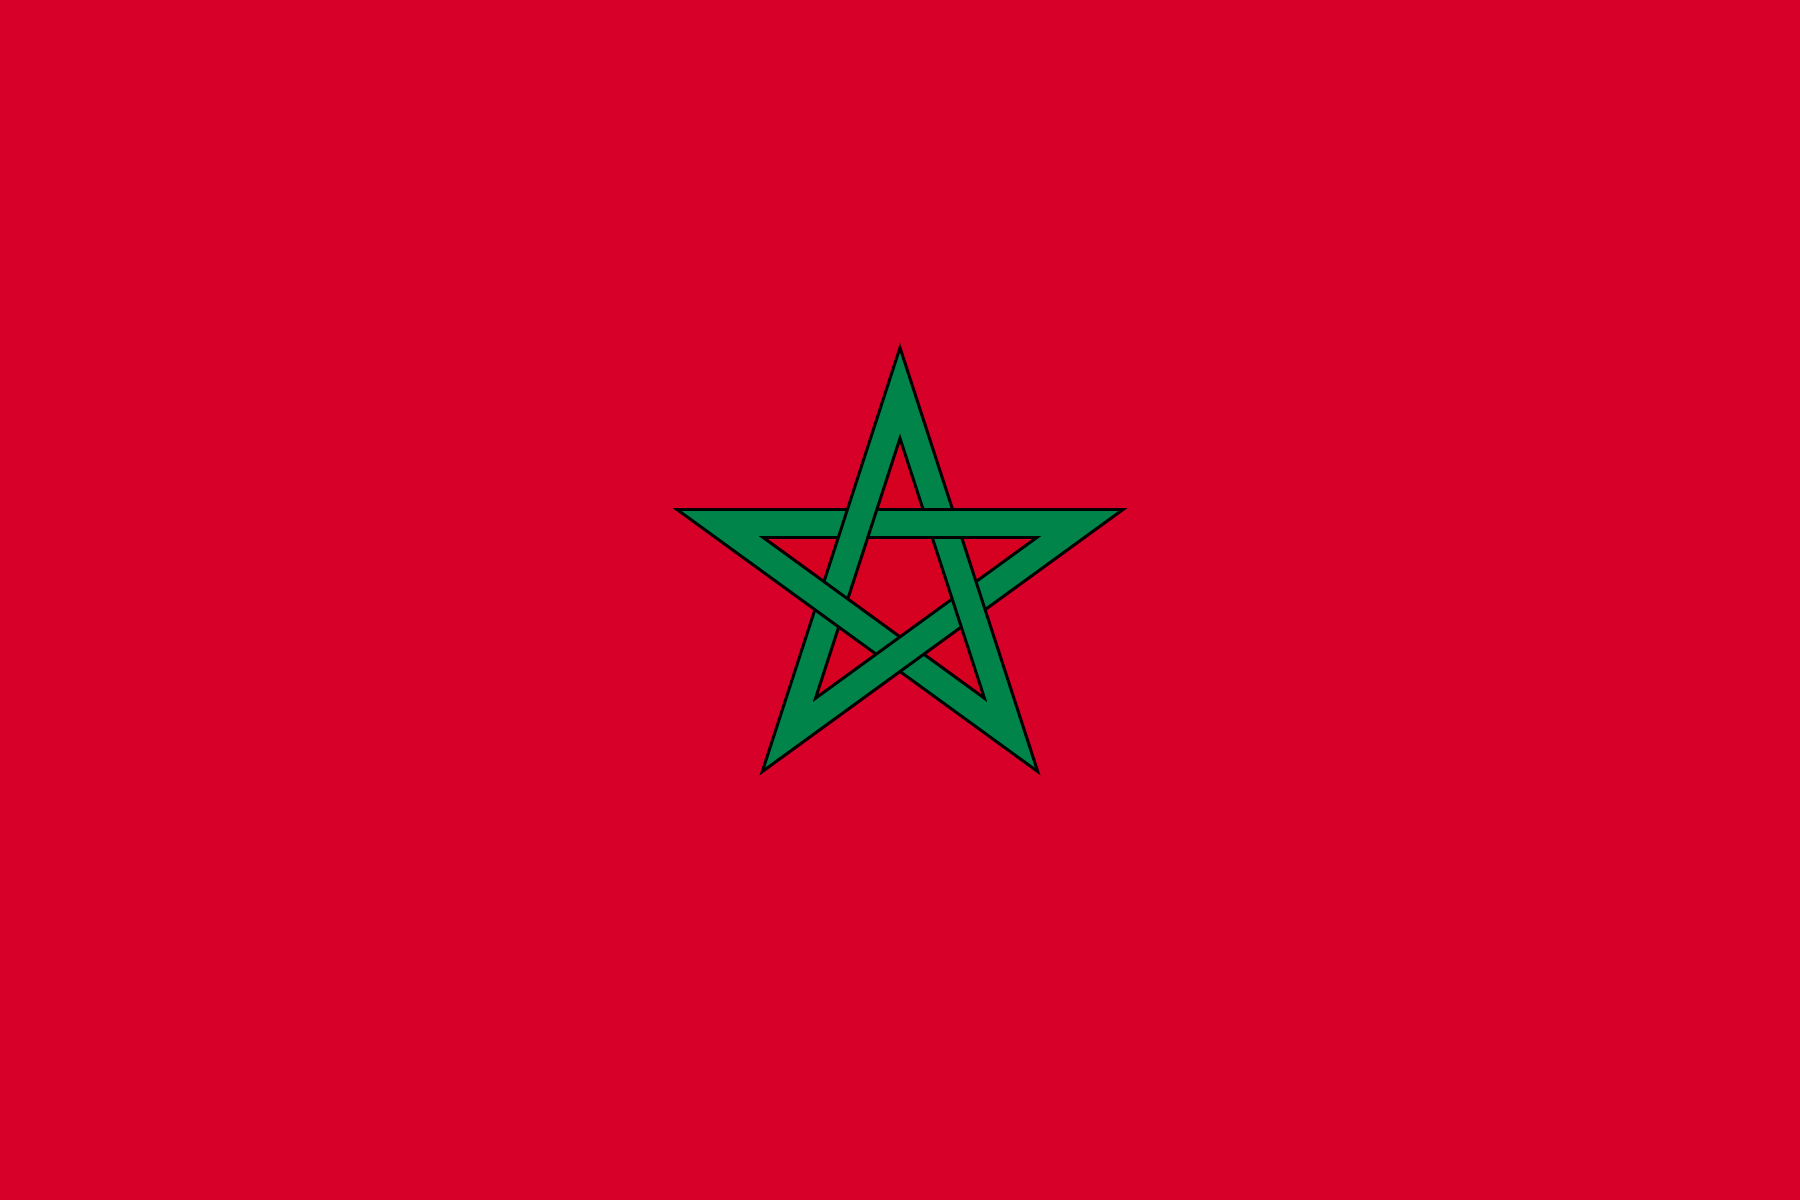 モロッコの国章